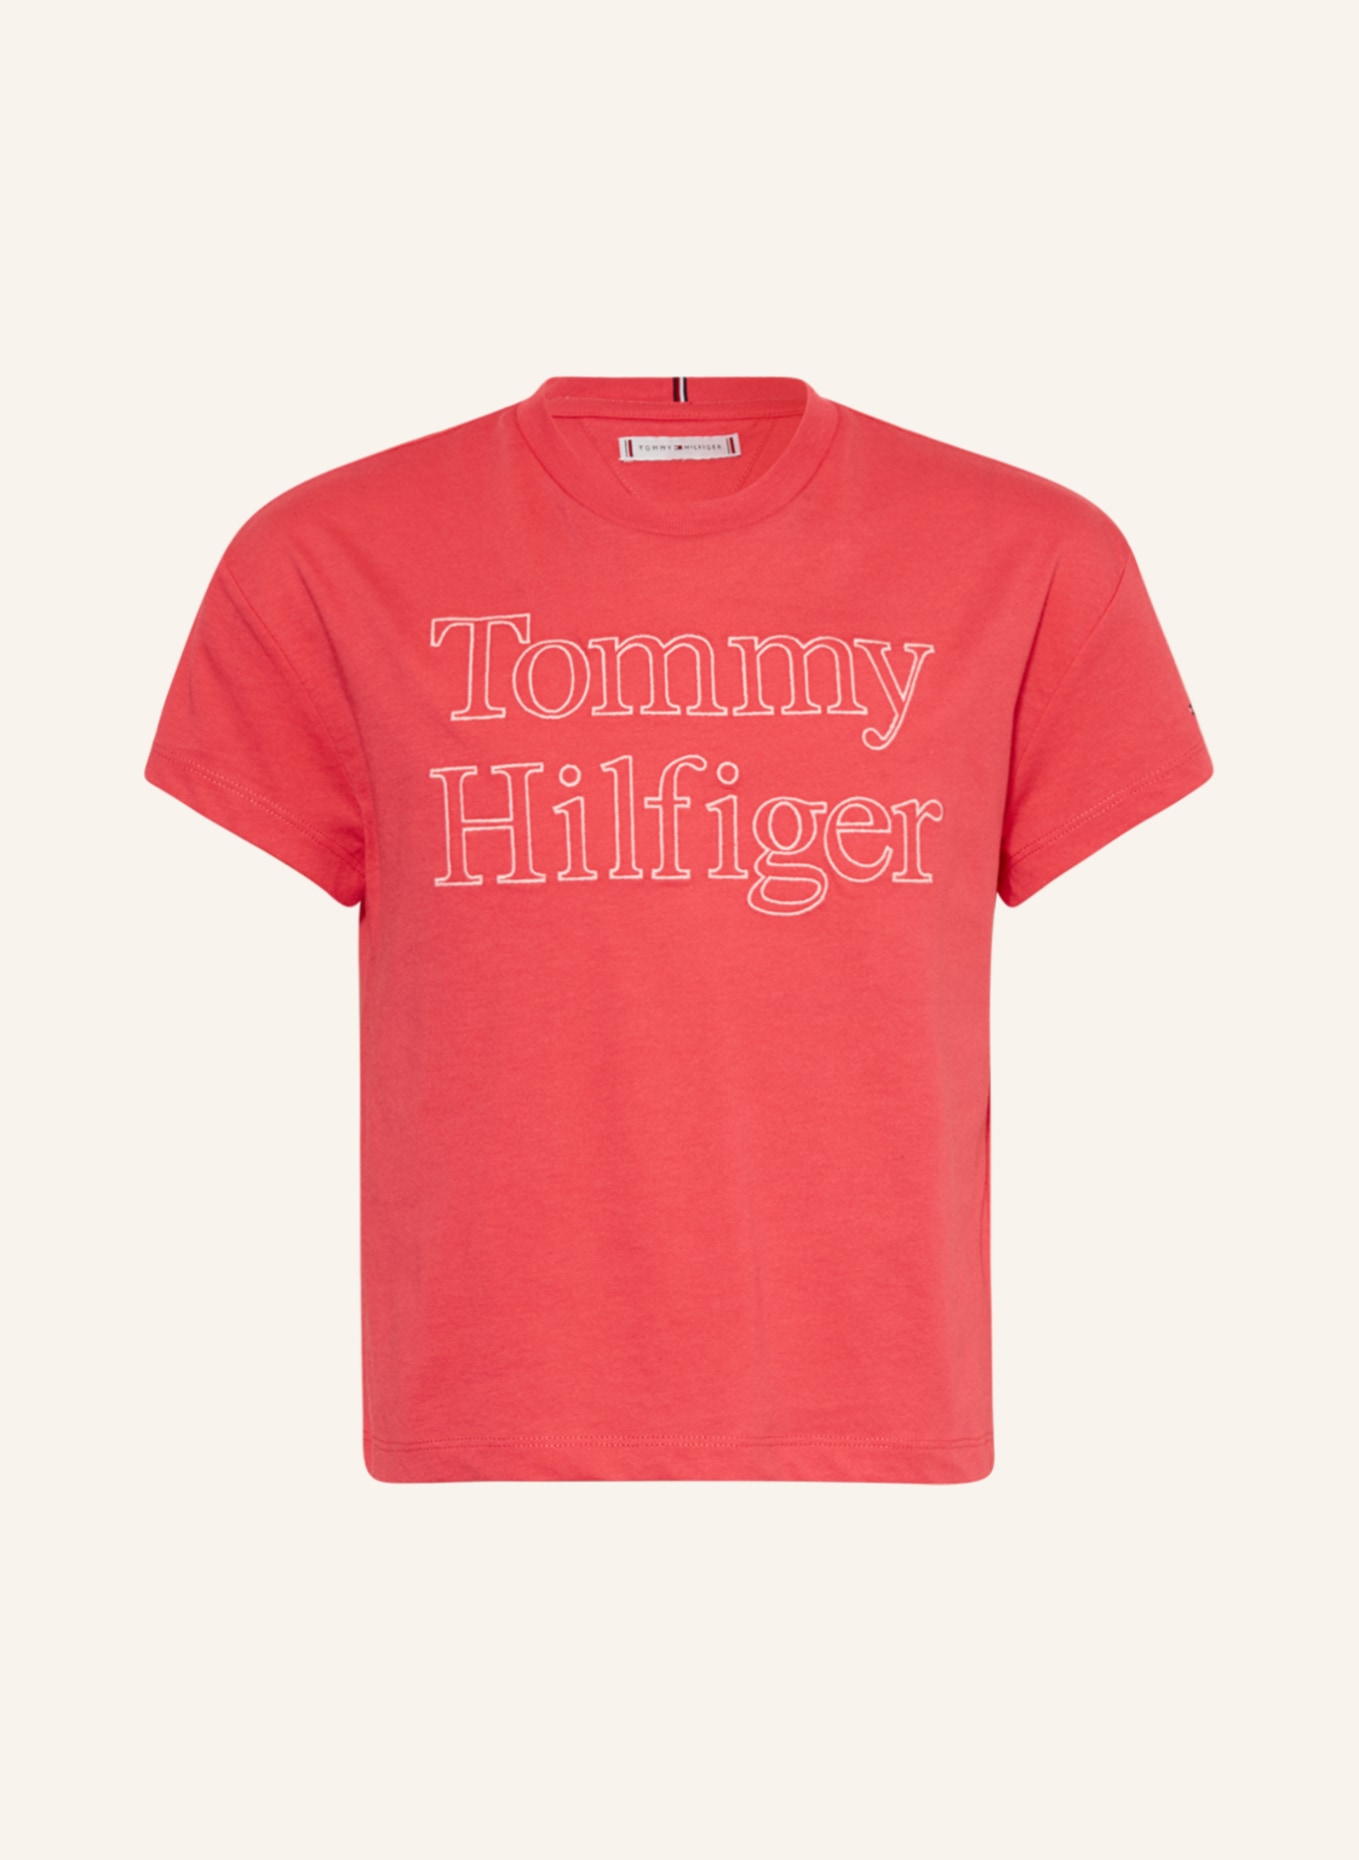 TOMMY HILFIGER T-Shirt, Farbe: PINK (Bild 1)